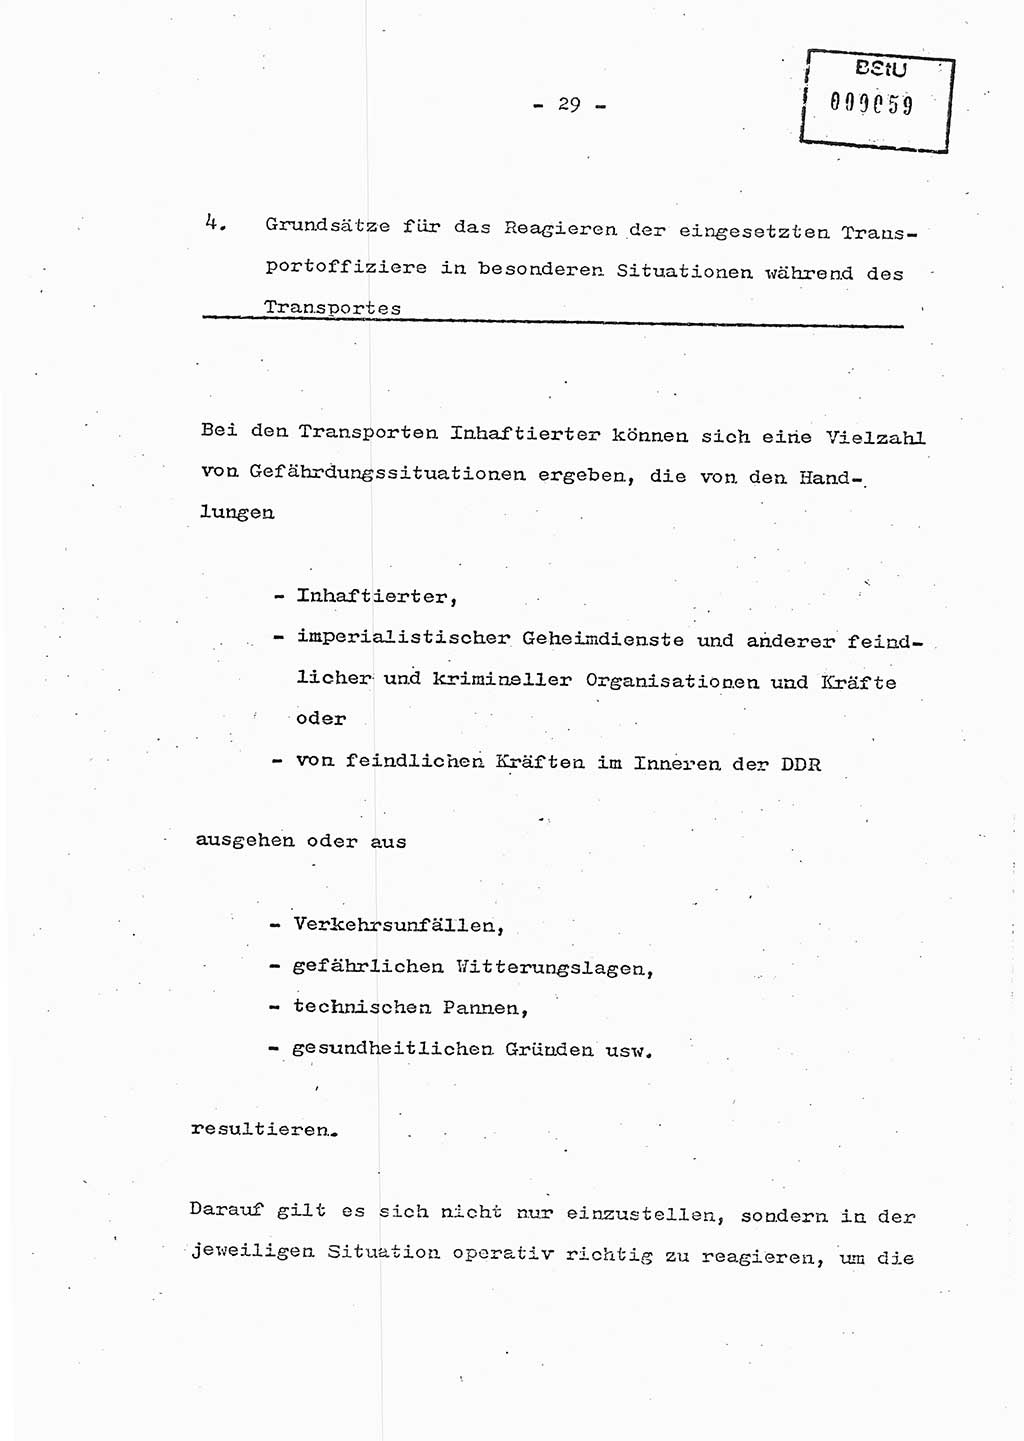 Schulungsmaterial Exemplar-Nr.: 7, Ministerium für Staatssicherheit [Deutsche Demokratische Republik (DDR)], Abteilung (Abt.) ⅩⅣ, Berlin 1986, Seite 29 (Sch.-Mat. Expl. 7 MfS DDR Abt. ⅩⅣ /86 1986, S. 29)